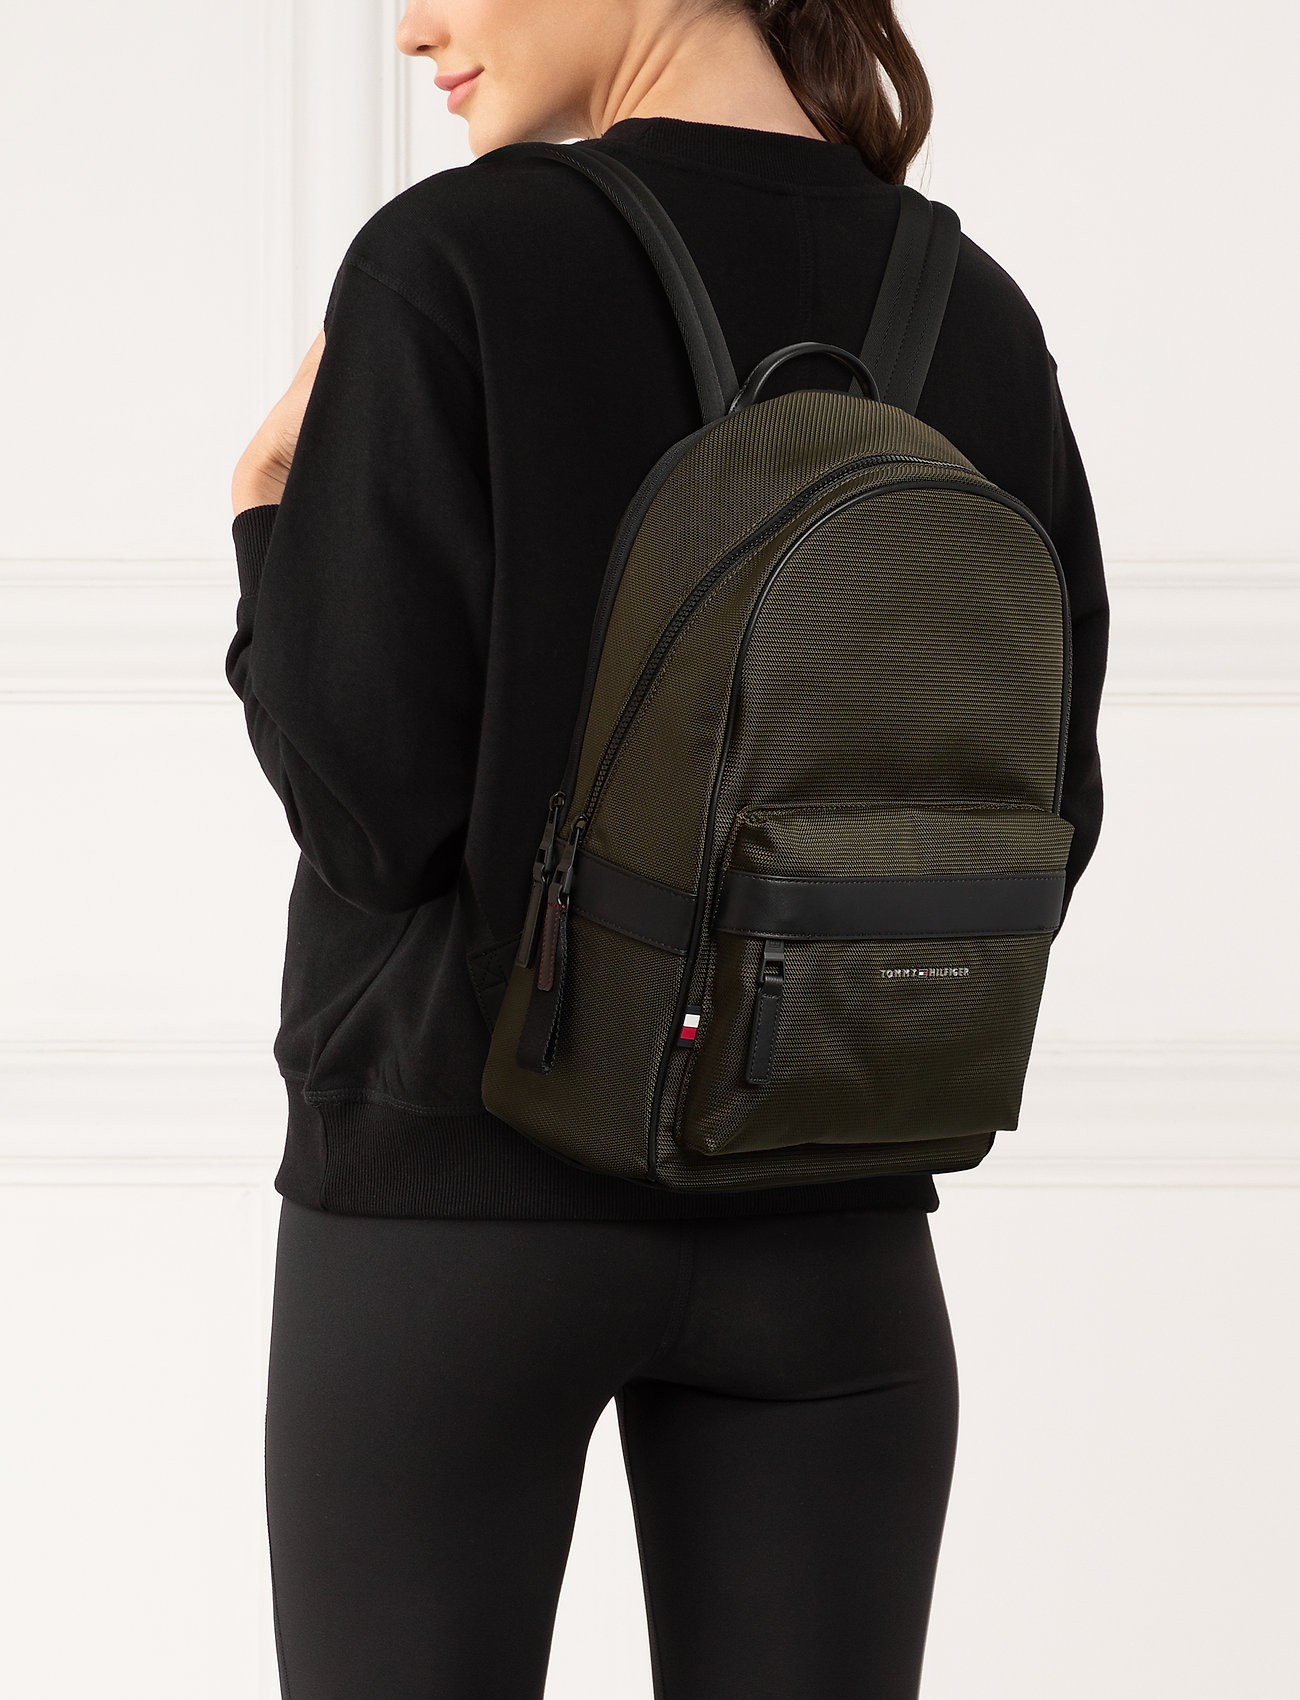 hilfiger elevated backpack